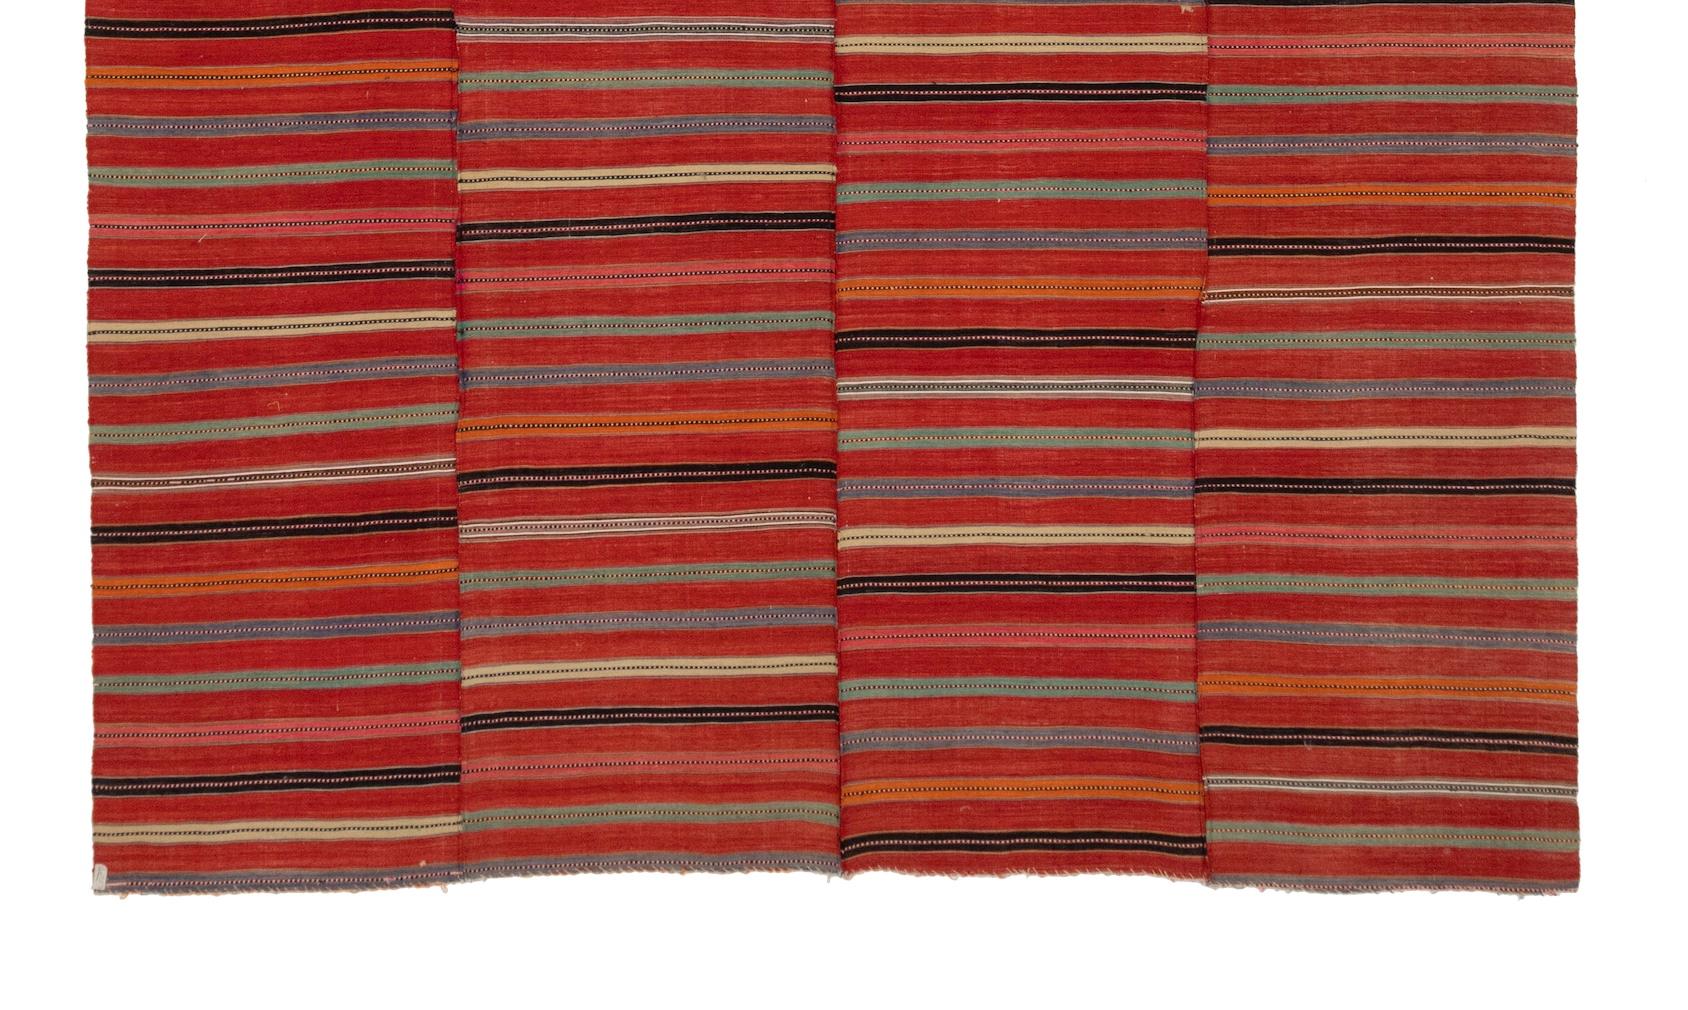 Les tapis Qashqai proviennent d'une confédération tribale qui partage les mêmes dialectes et le même héritage. Descendants des tribus Turkmen et Ersari, beaucoup sont des nomades pastoraux qui se déplacent en fonction de la saison, de la province